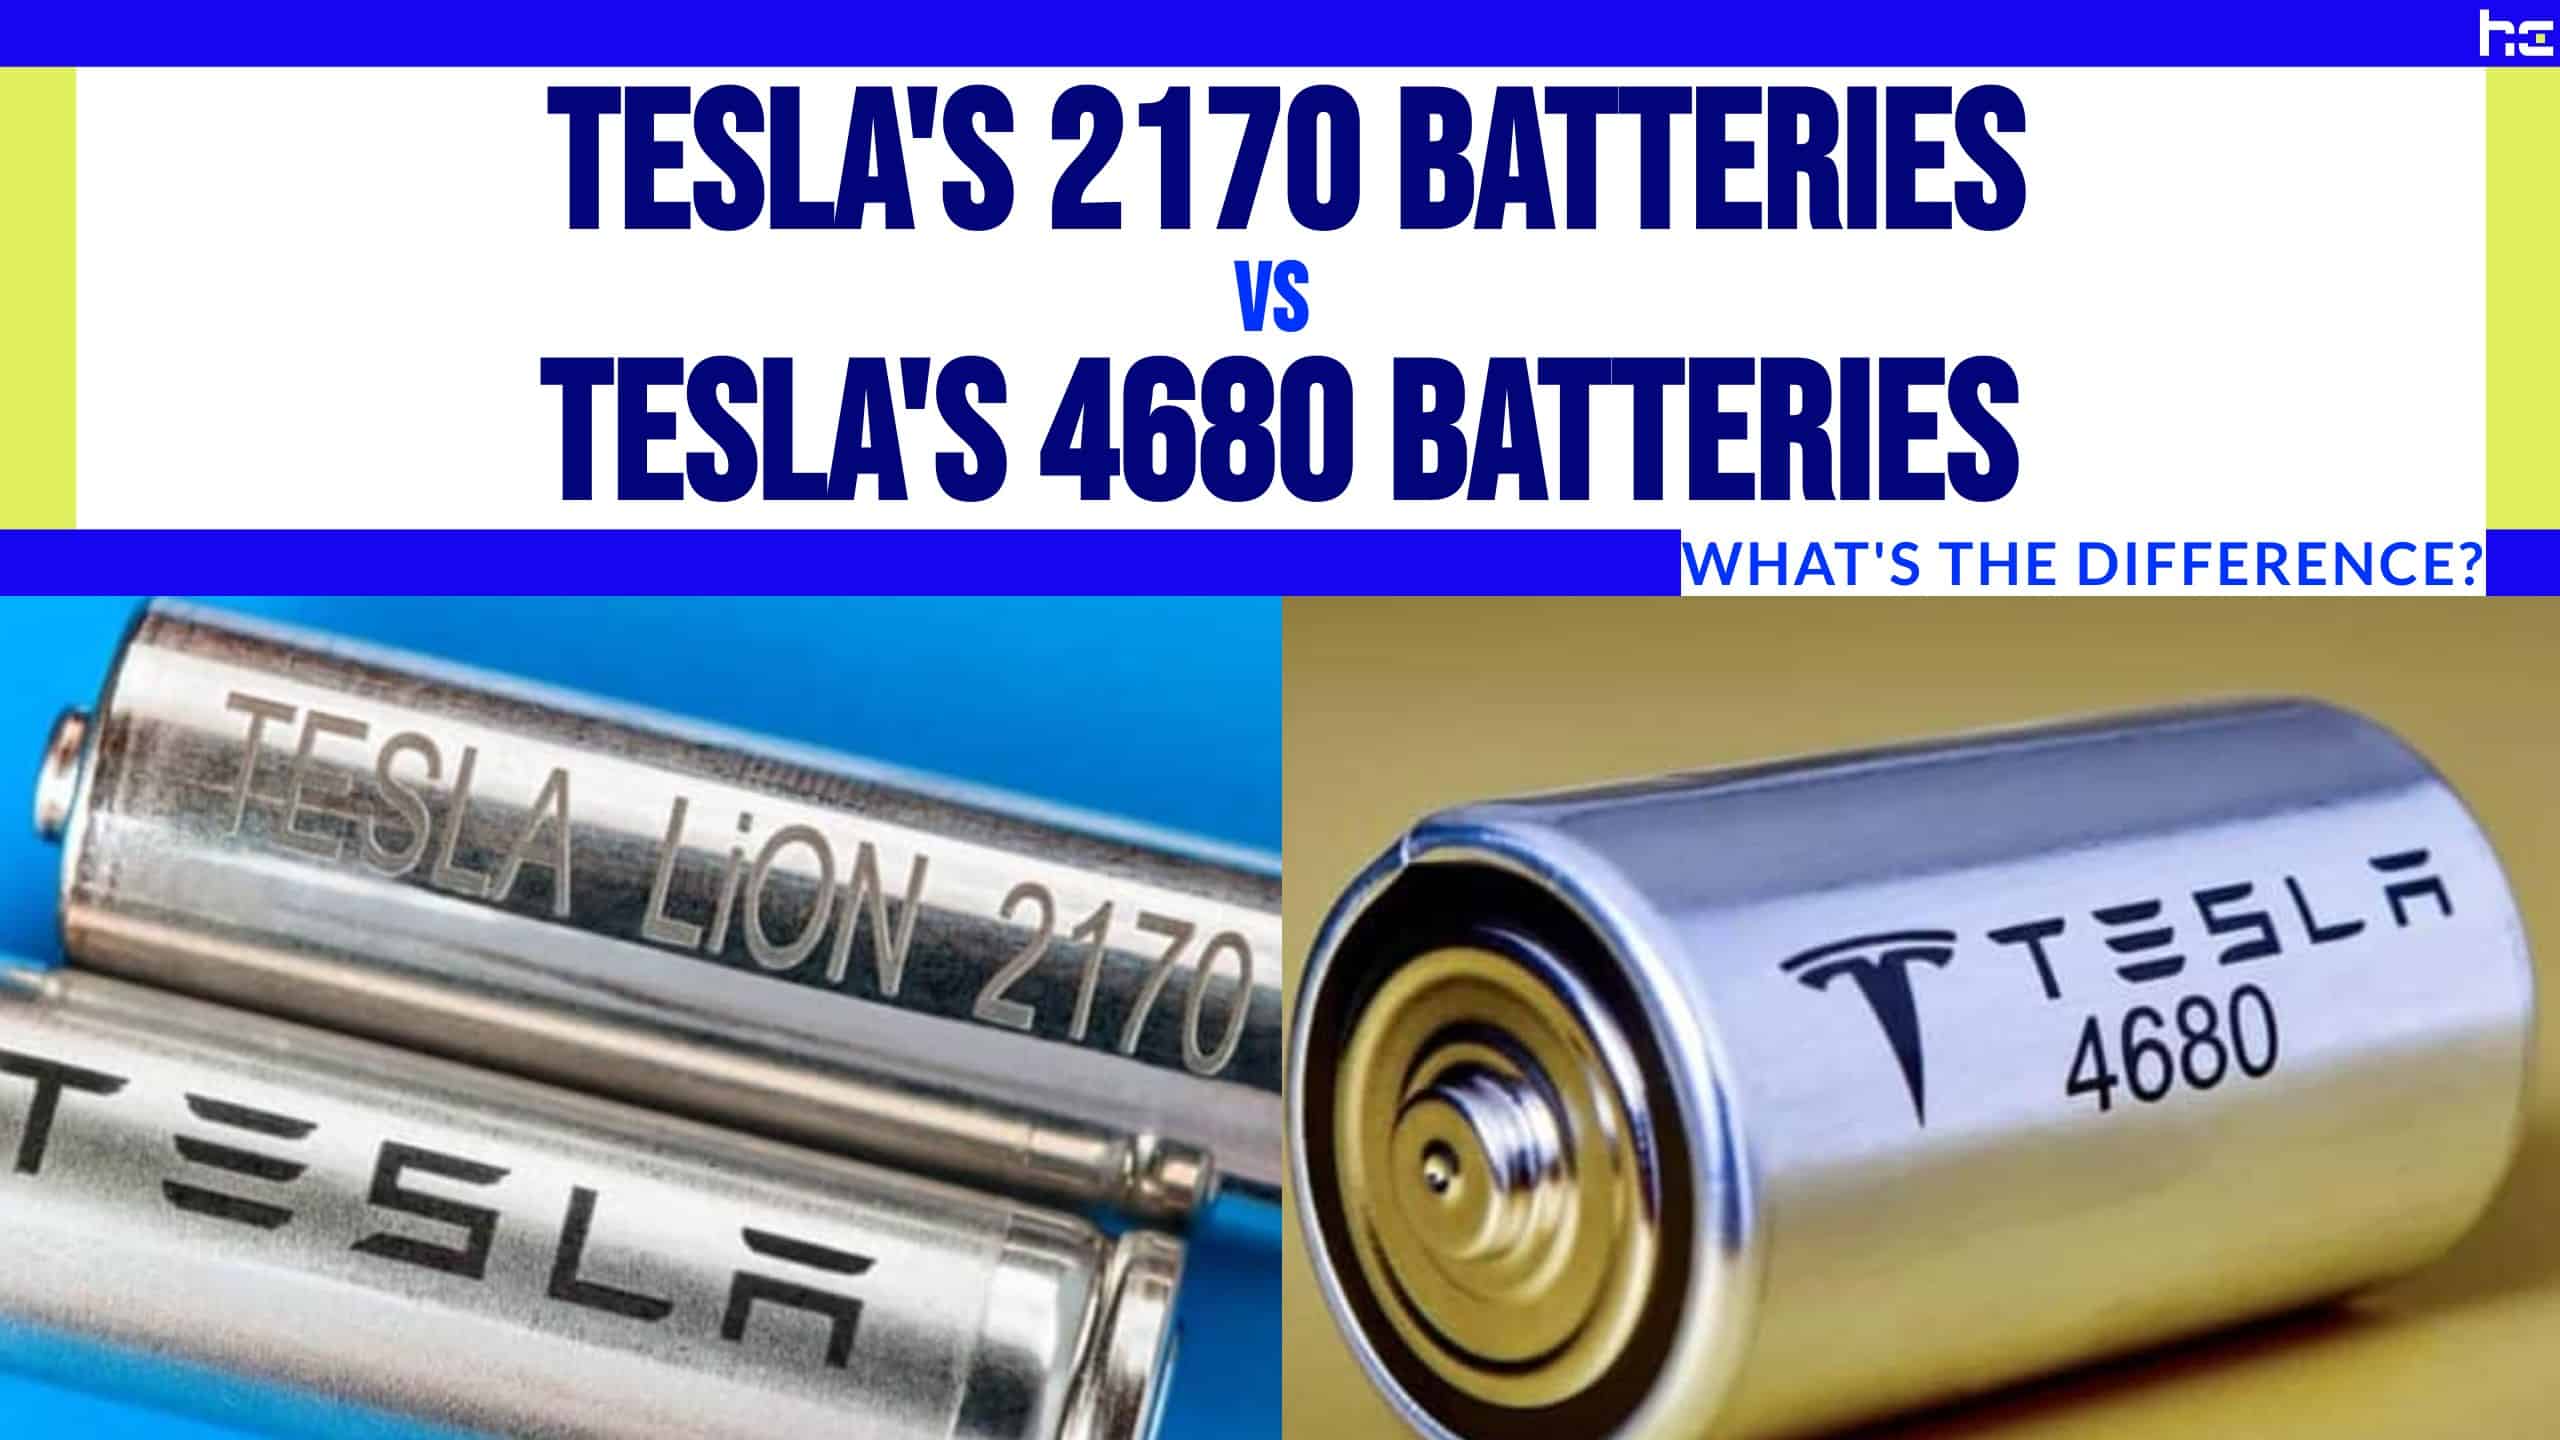 Tesla's 2170 Batteries vs. Tesla's 4680 Batteries featured image